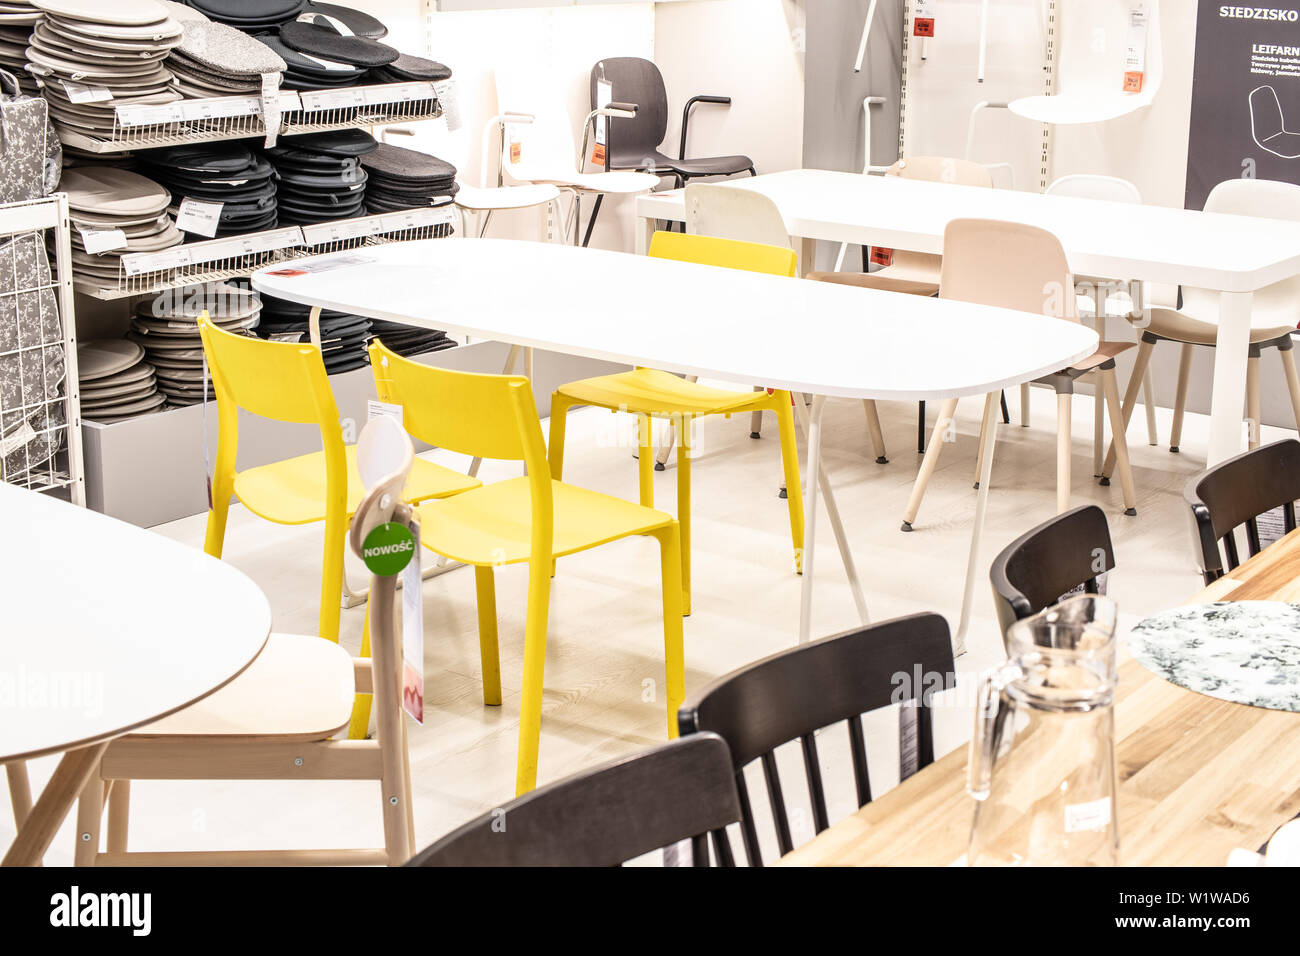 Lodz, Pologne, Jan 2019 intérieur exposition magasin IKEA. Table à manger moderne chaises de la table. IKEA vend des meubles prêts-à-assembler, accessoires Accueil Banque D'Images